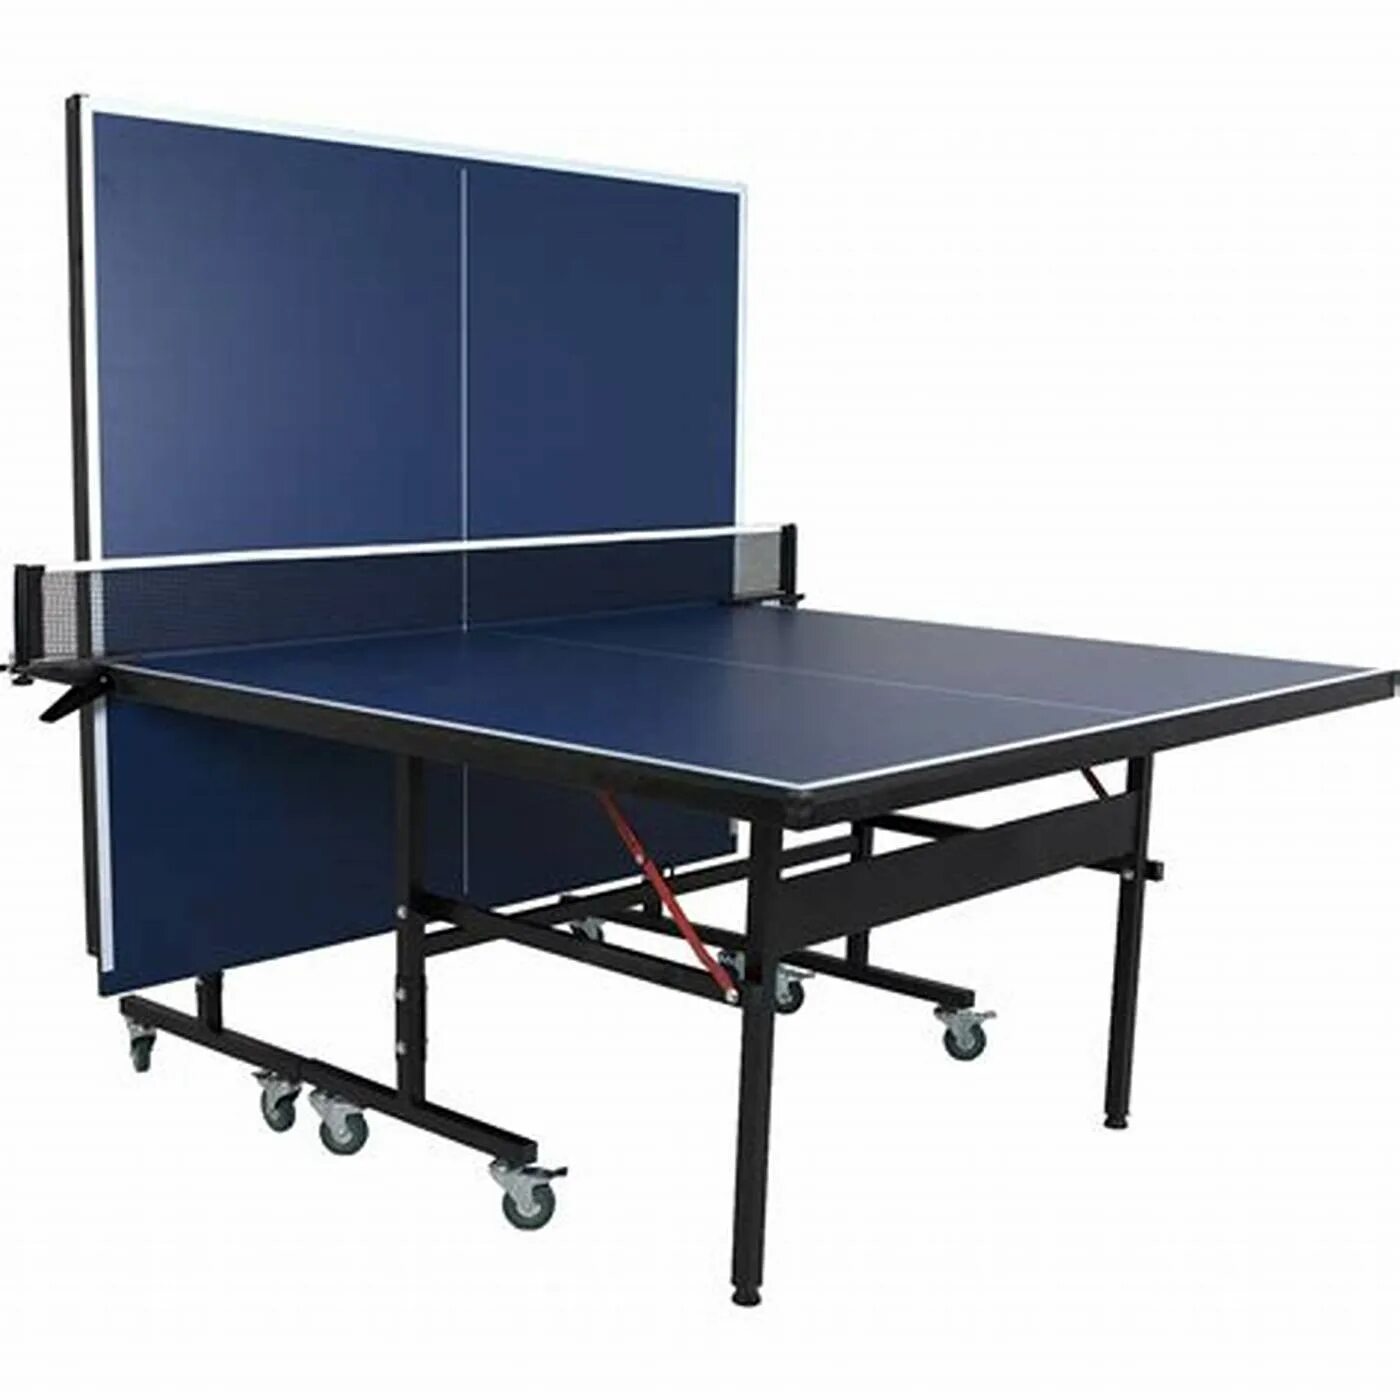 Теннисный стол Joola. Torneo стол для пинг-понга. Теннисный стол Neottec. Стол теннисный складной Light 61010. Столы теннисные складные для улицы